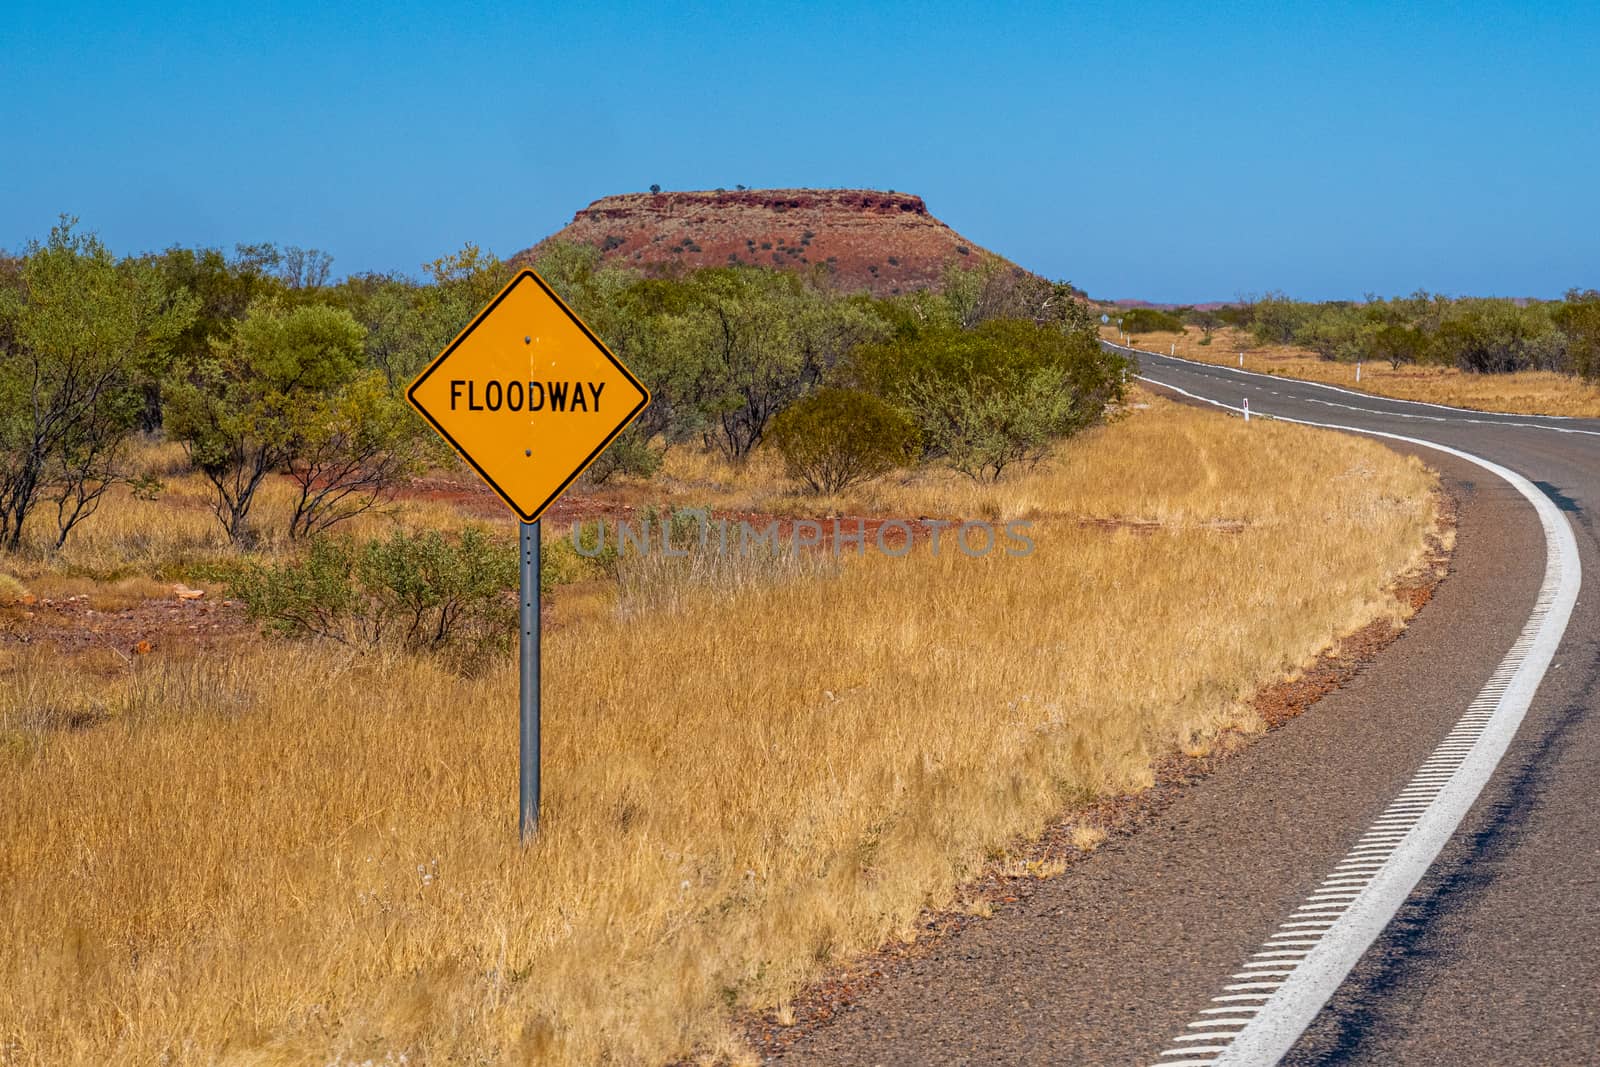 Flood way street sign besides road in Australian bush by MXW_Stock